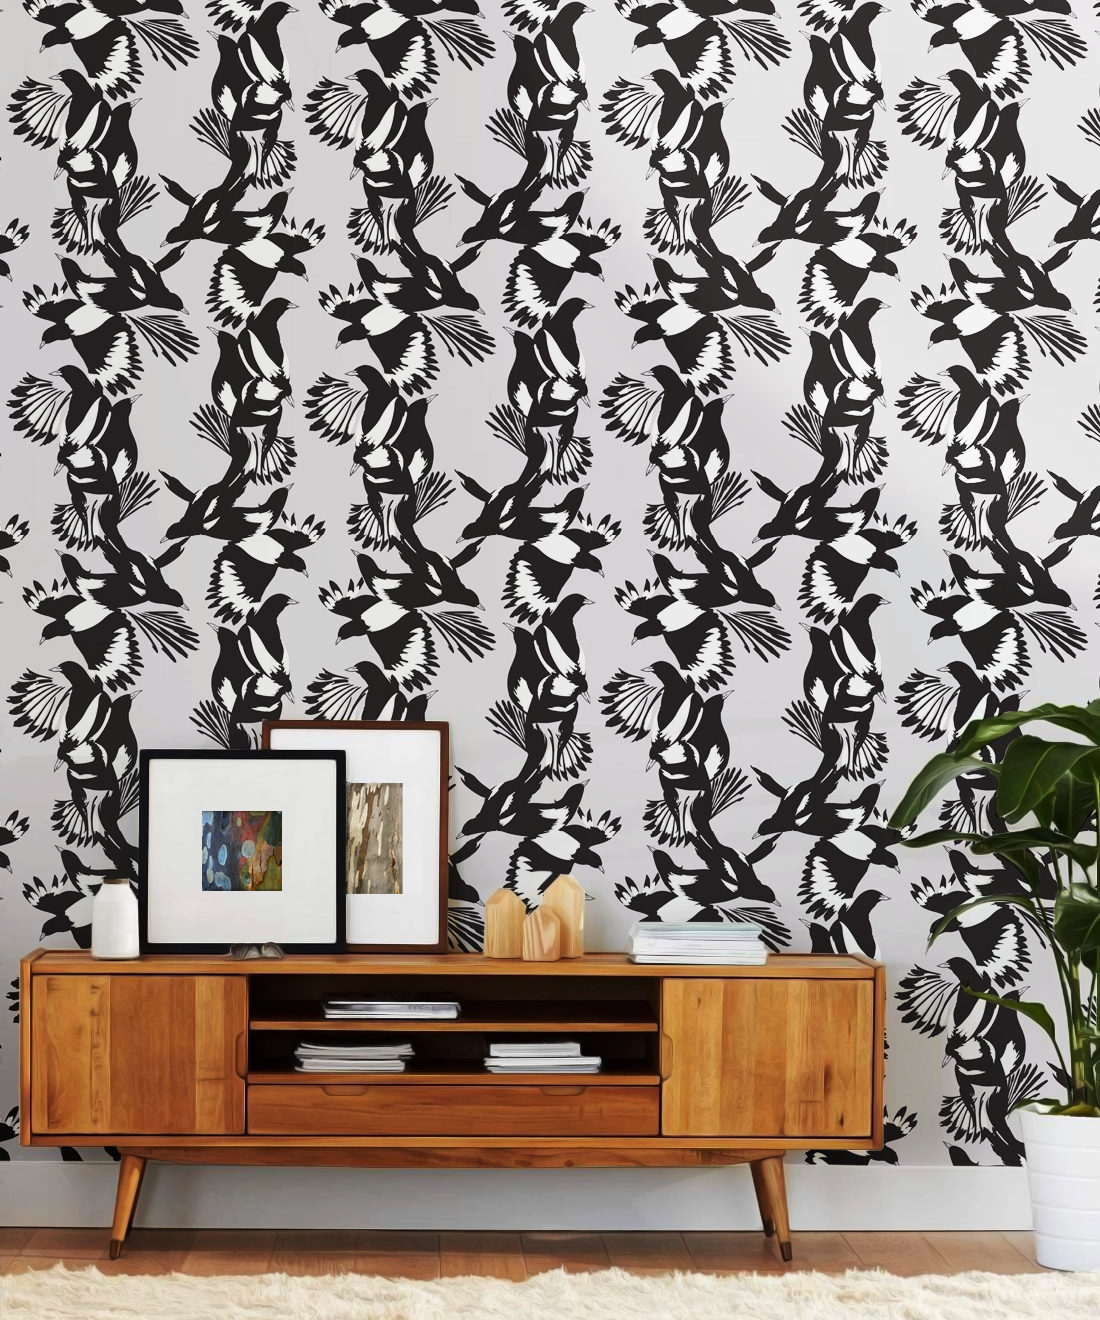 Magpie Wallpaper - Milton & King - Kingdom Home - Carta da parati con uccelli - Insitu in bianco e nero